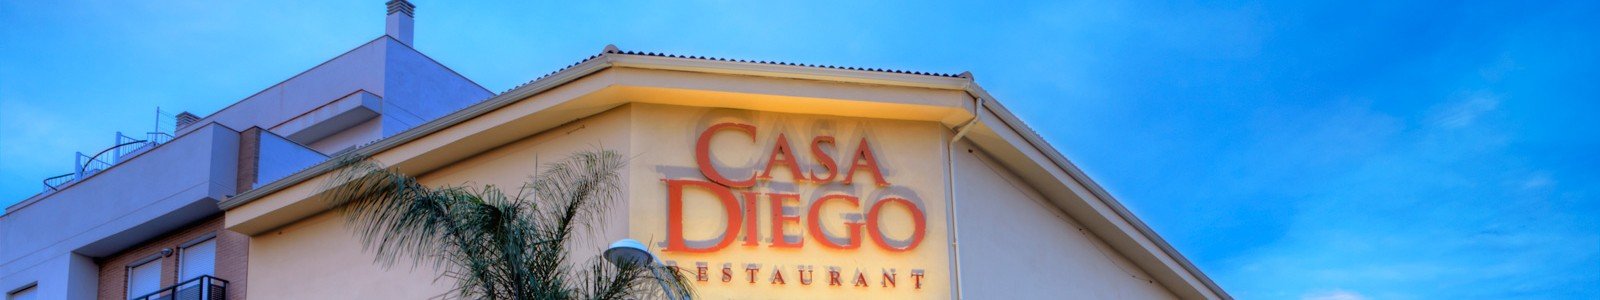 Casa Diego :: Restaurante Casa Diego, Monserrat